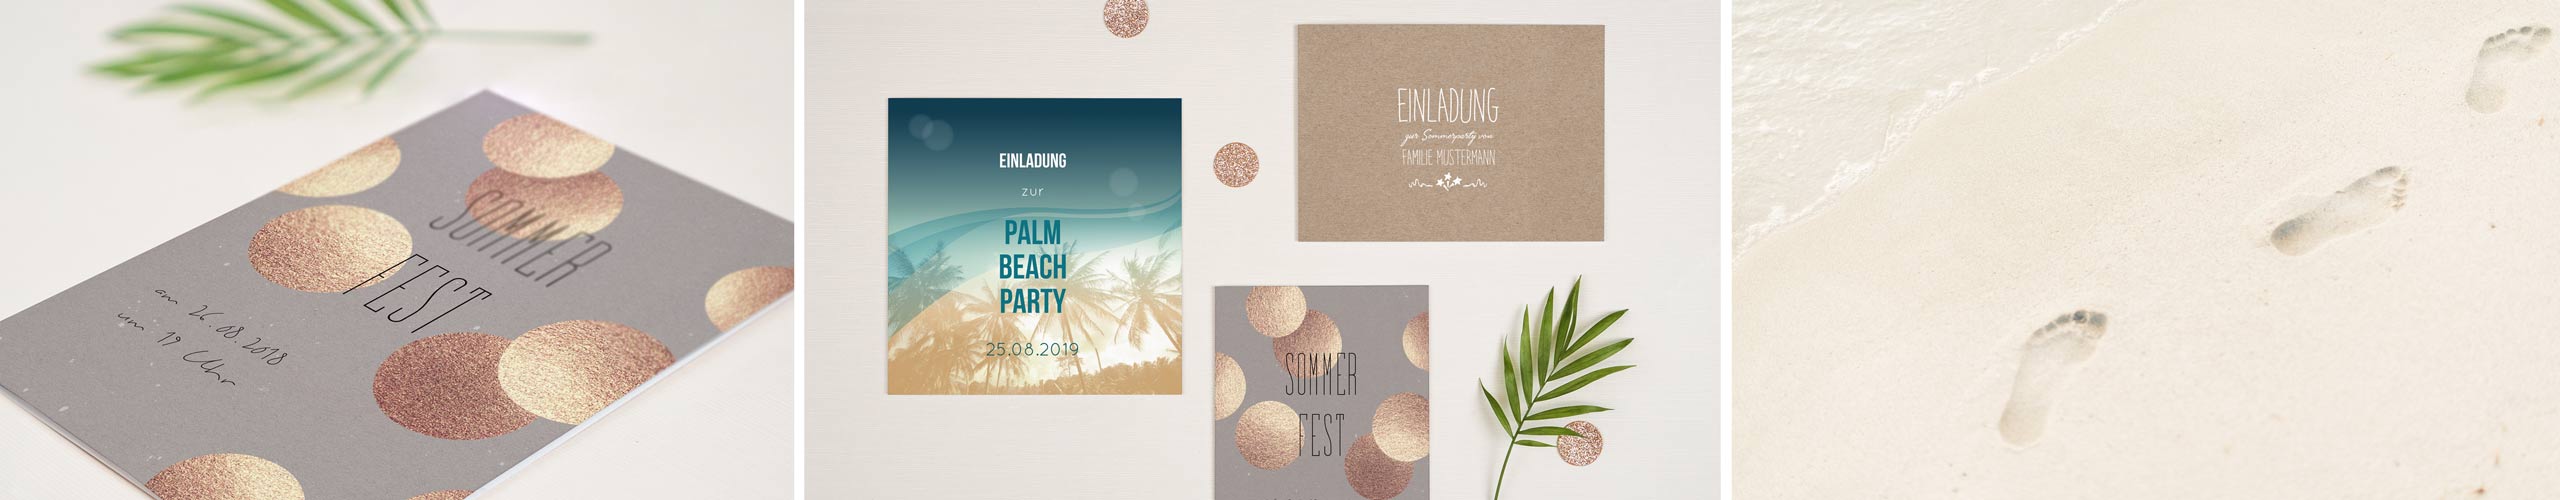 Einladungskarten zum Sommerfest in unterschiedlichen Formaten und Designs